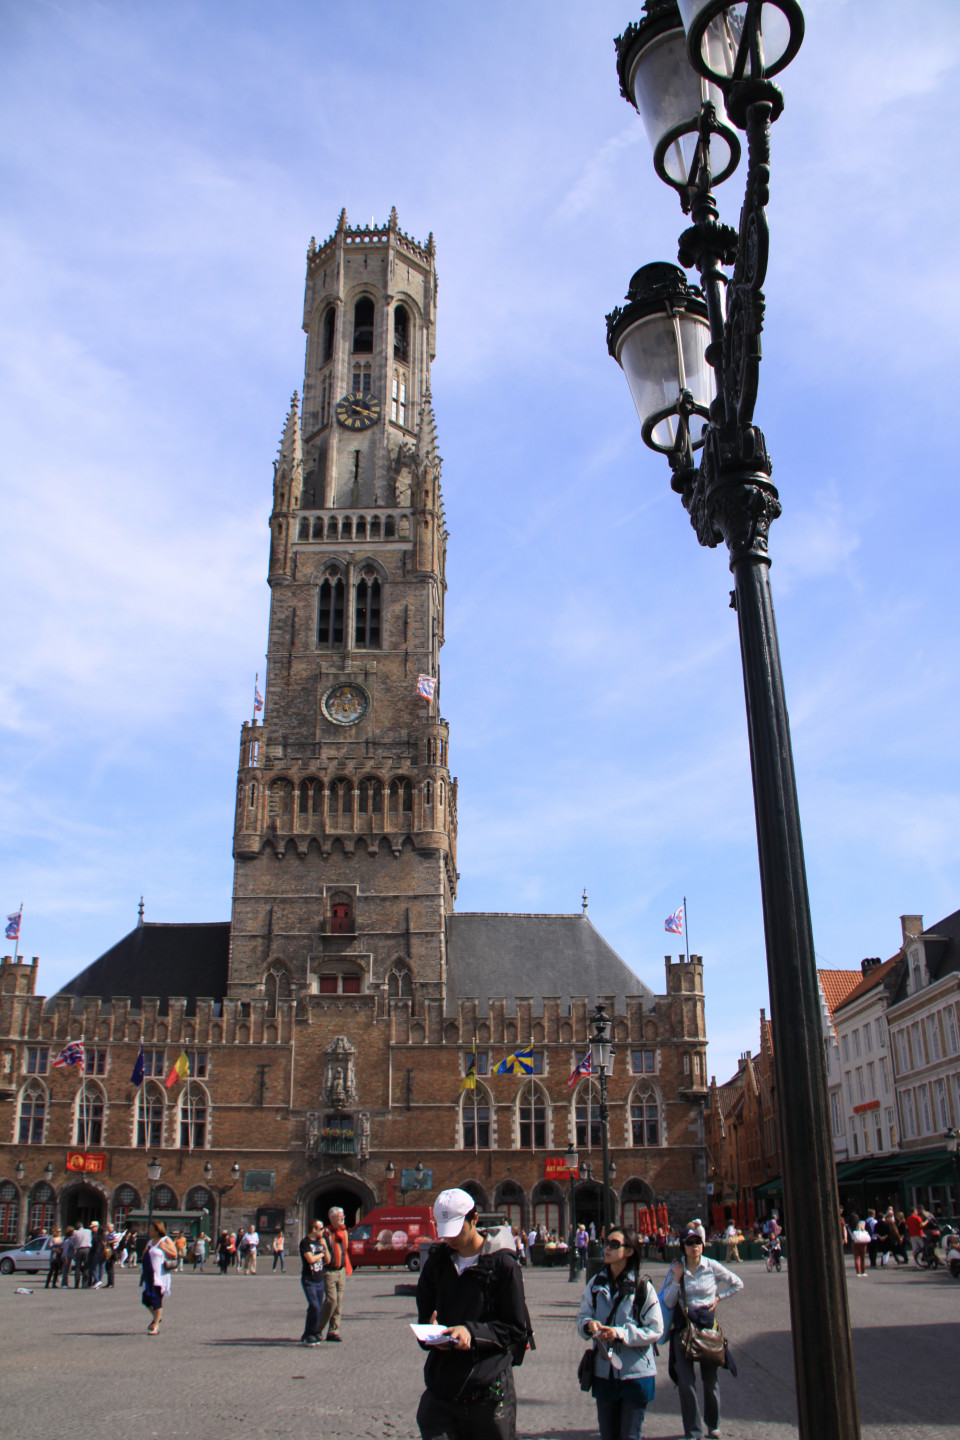 ベルギーとフランスの鐘楼群 ベルギー フランス World Heritage Site